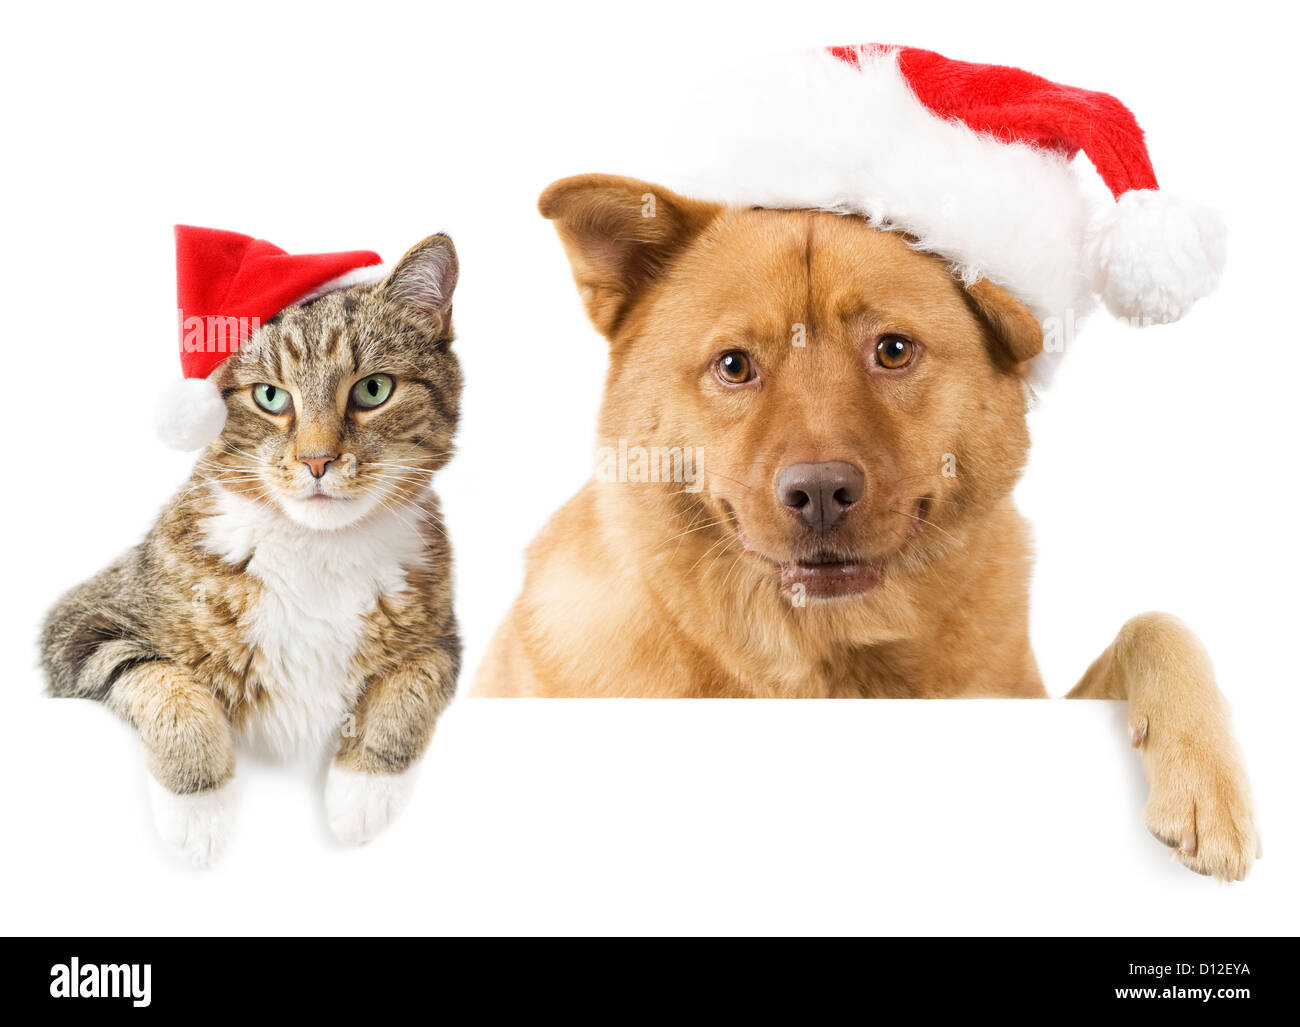 Katze und Hund mit roten Hüten über weiße Fahne Stockfoto